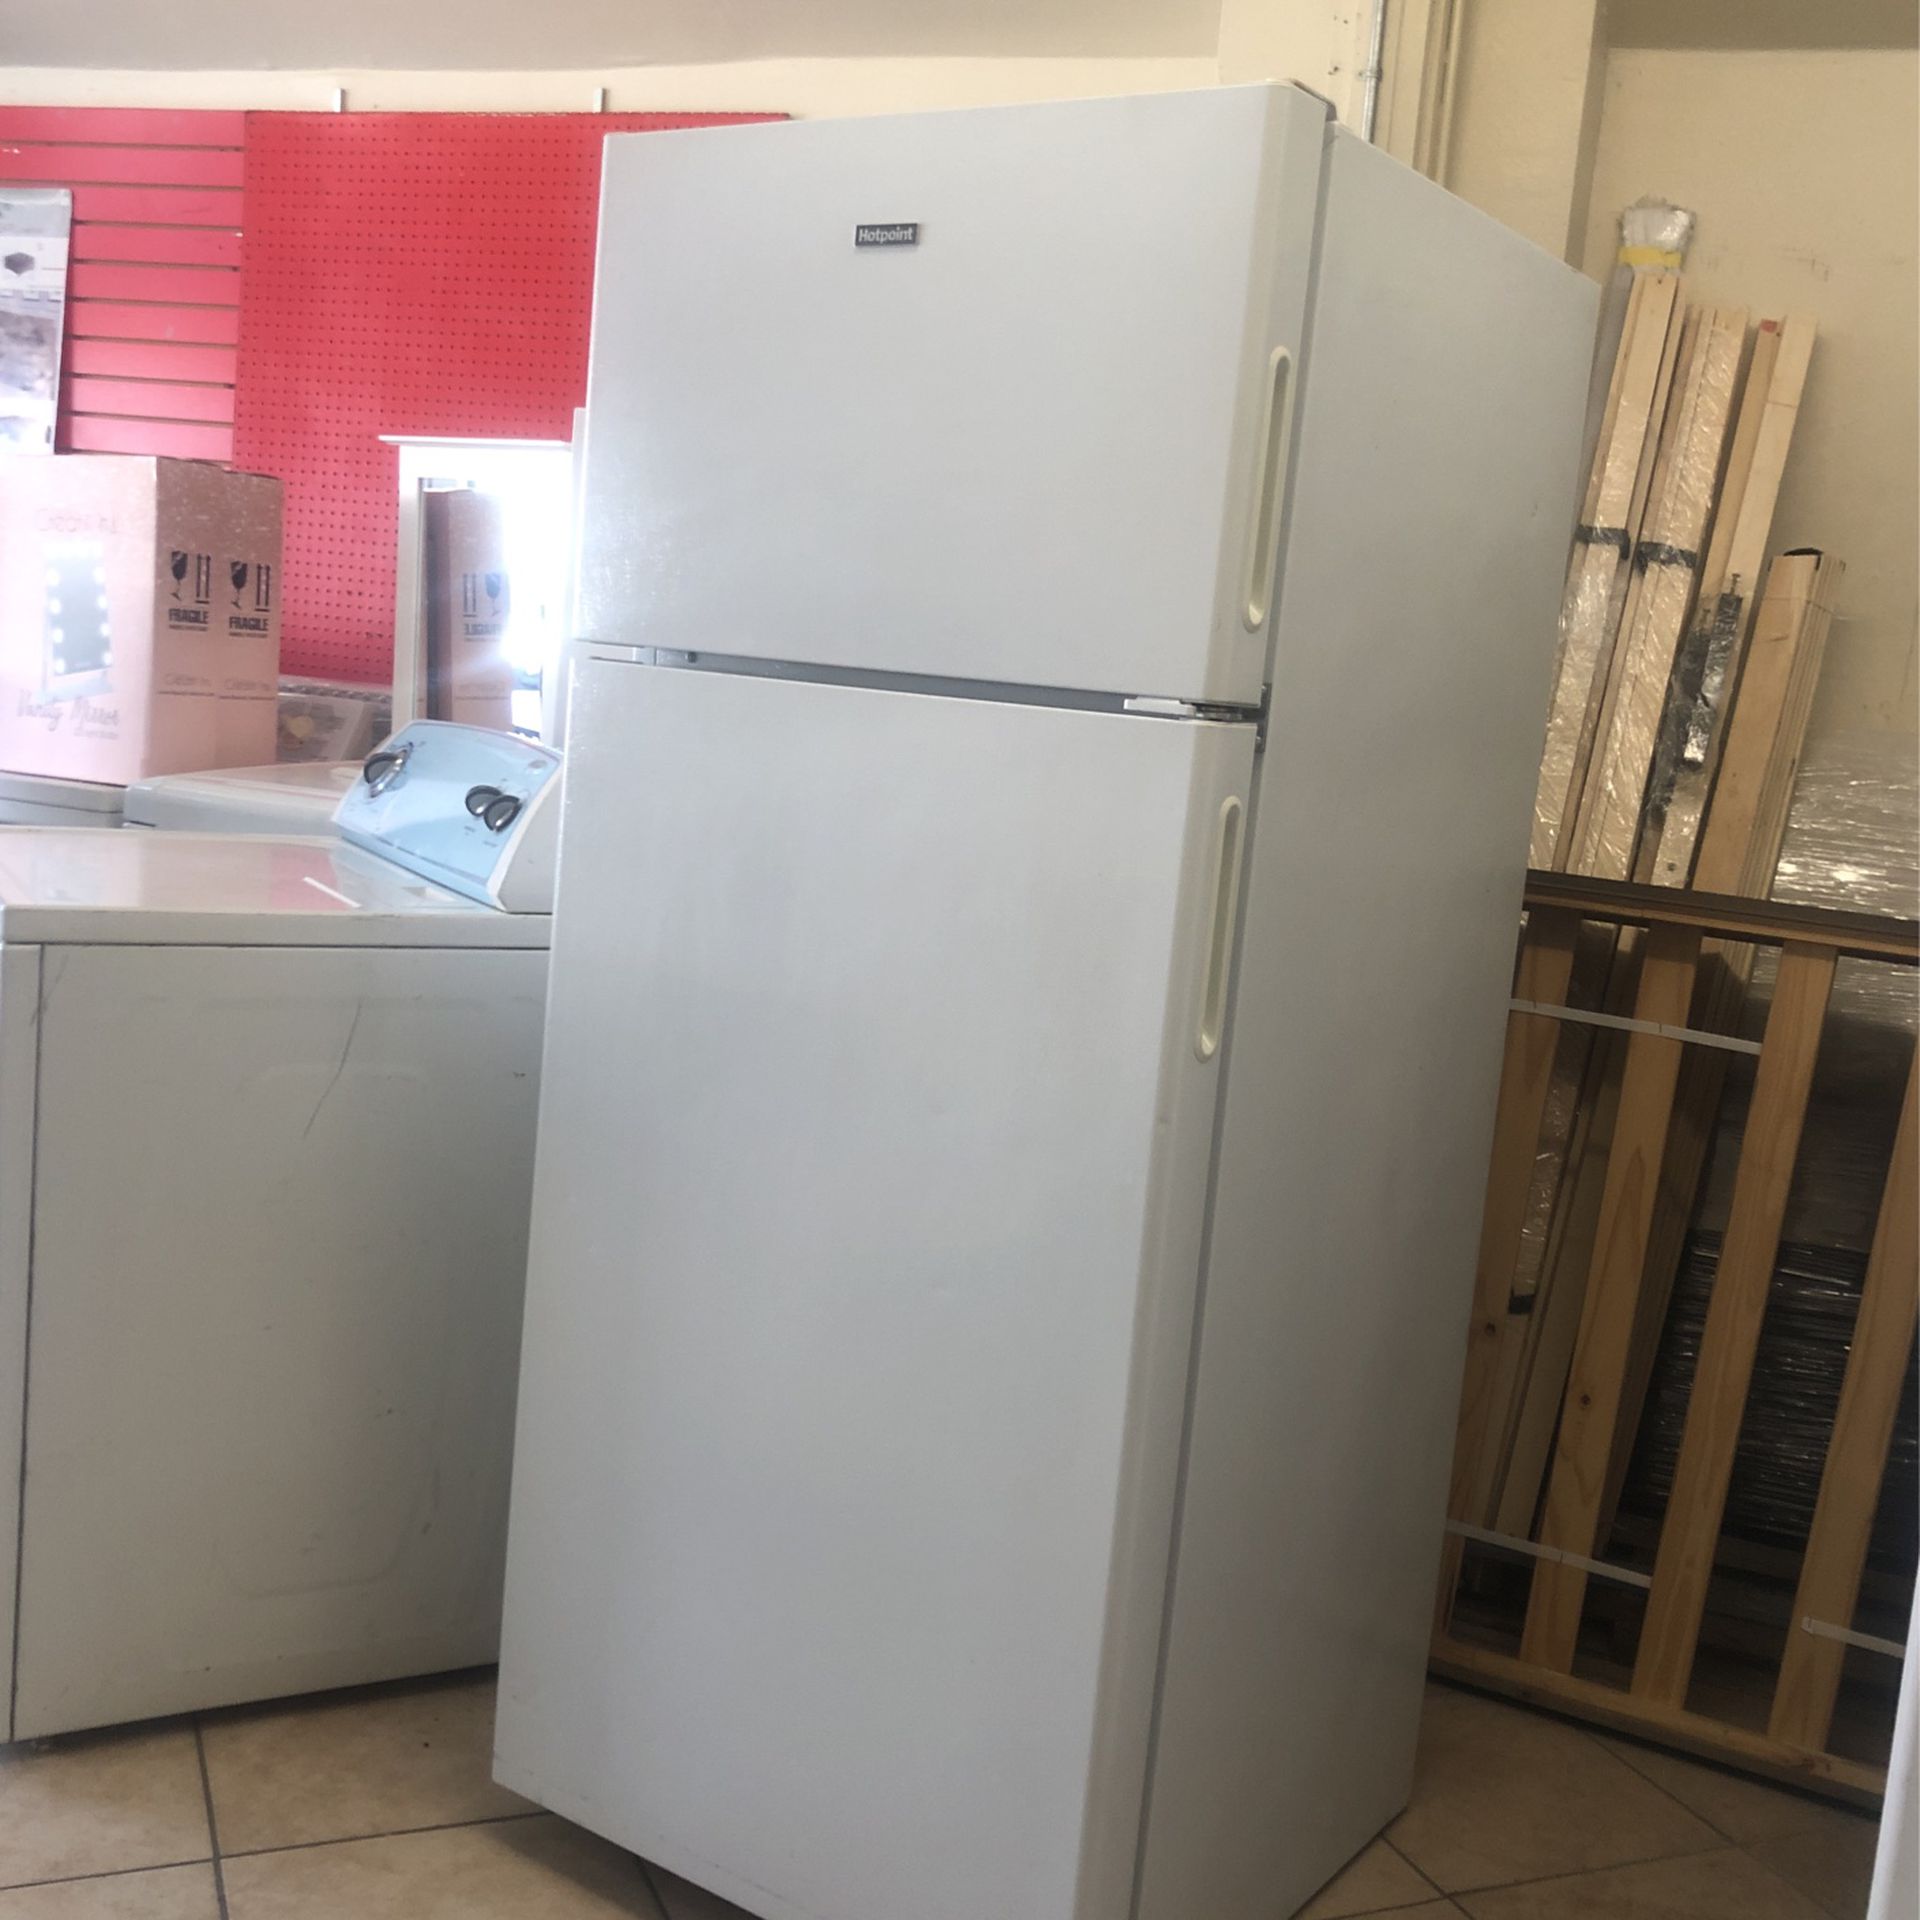 Refrigeradores usados en venta en muy buenas condiciones y con garantía  preguntar por precios - Refrigerators & Freezers - Gilroy, California, Facebook Marketplace